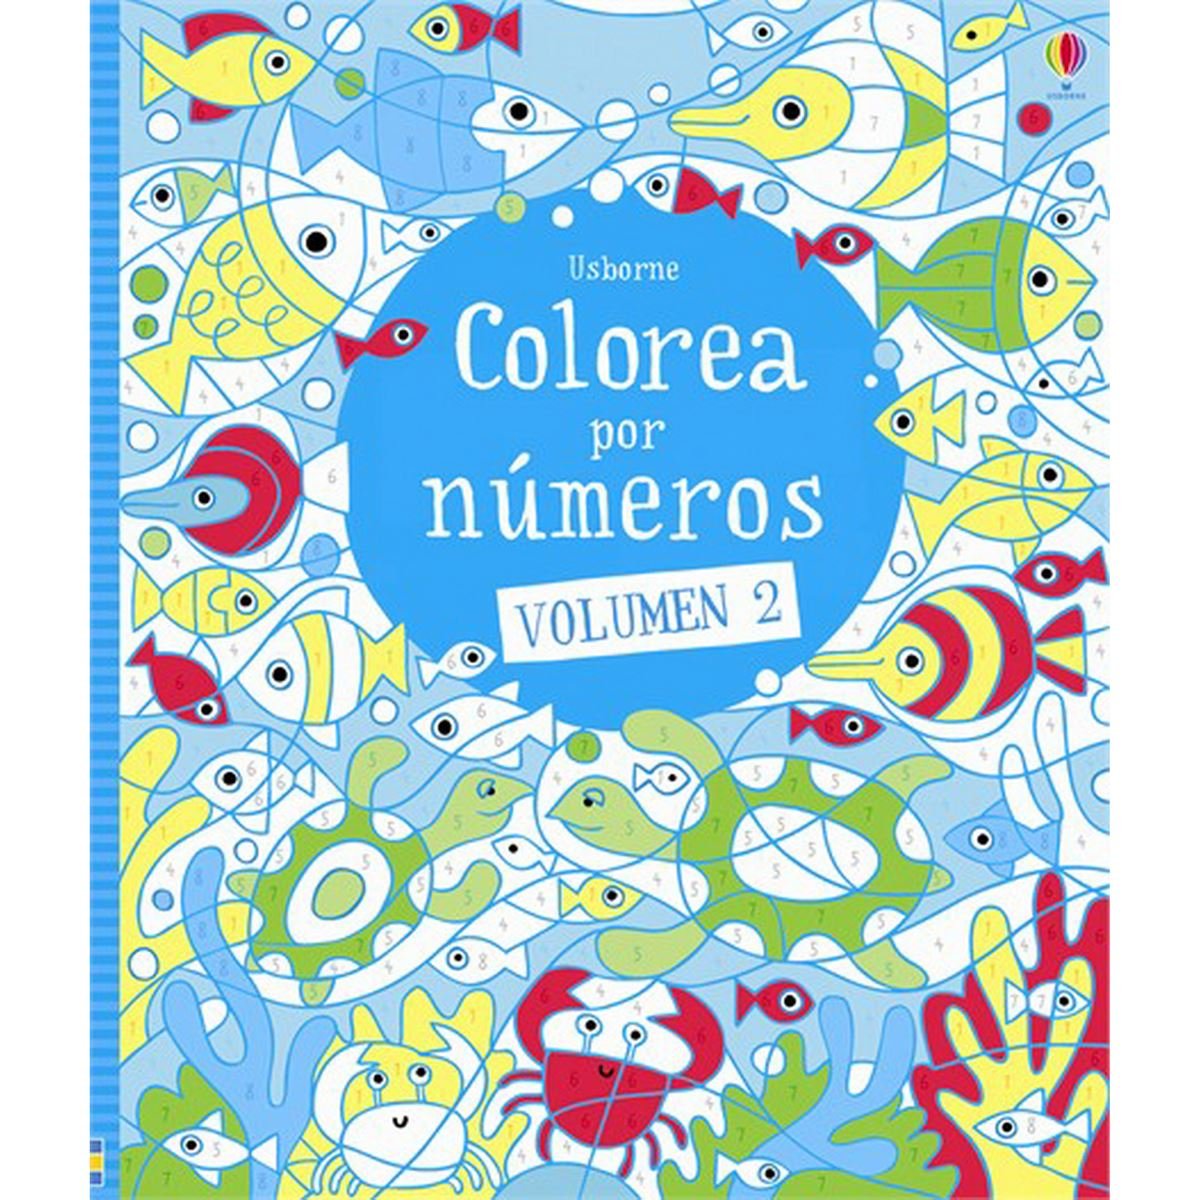 Colorea por números. Volumen 2